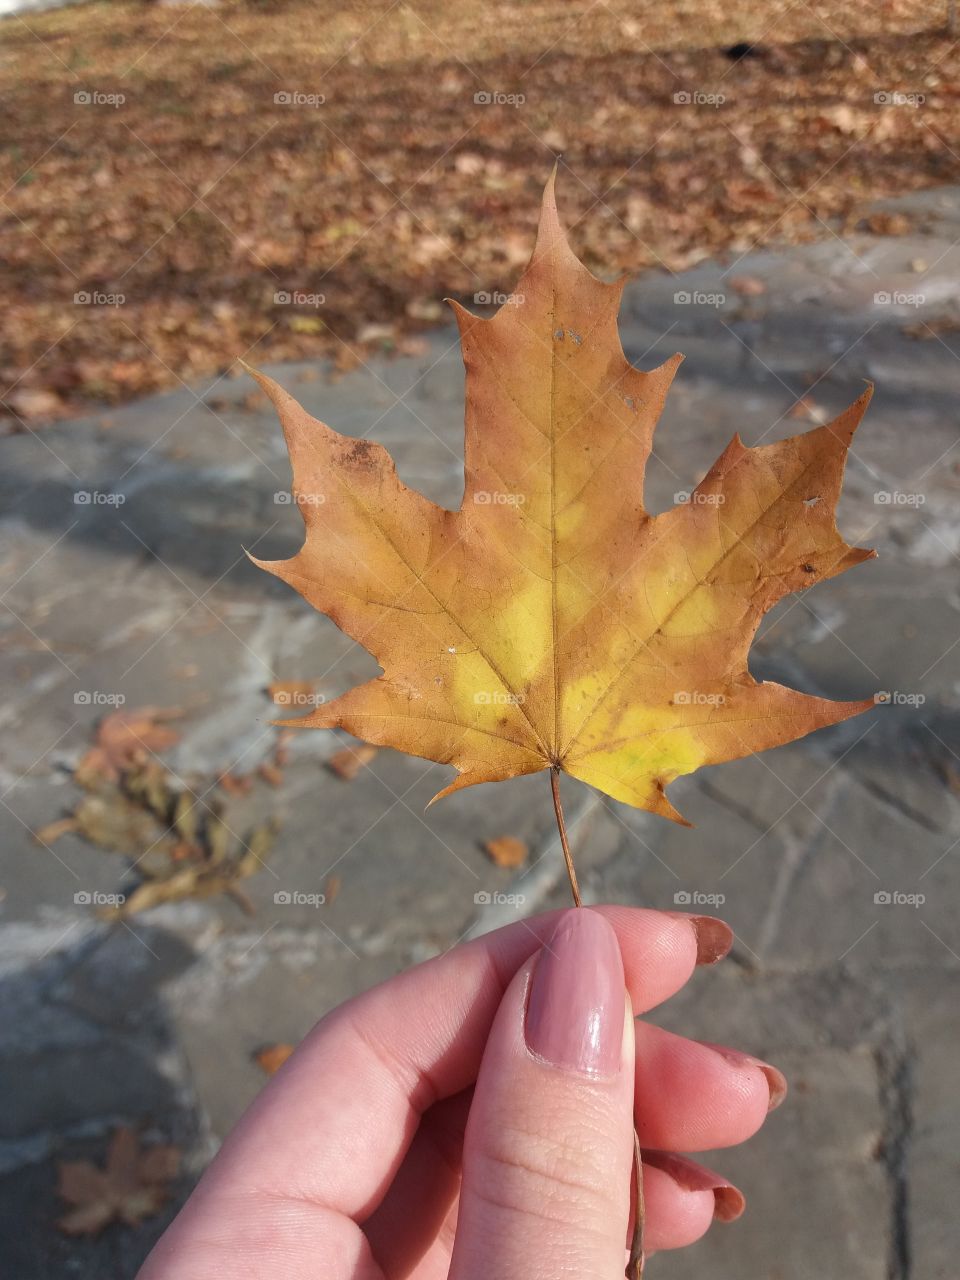 Fall season